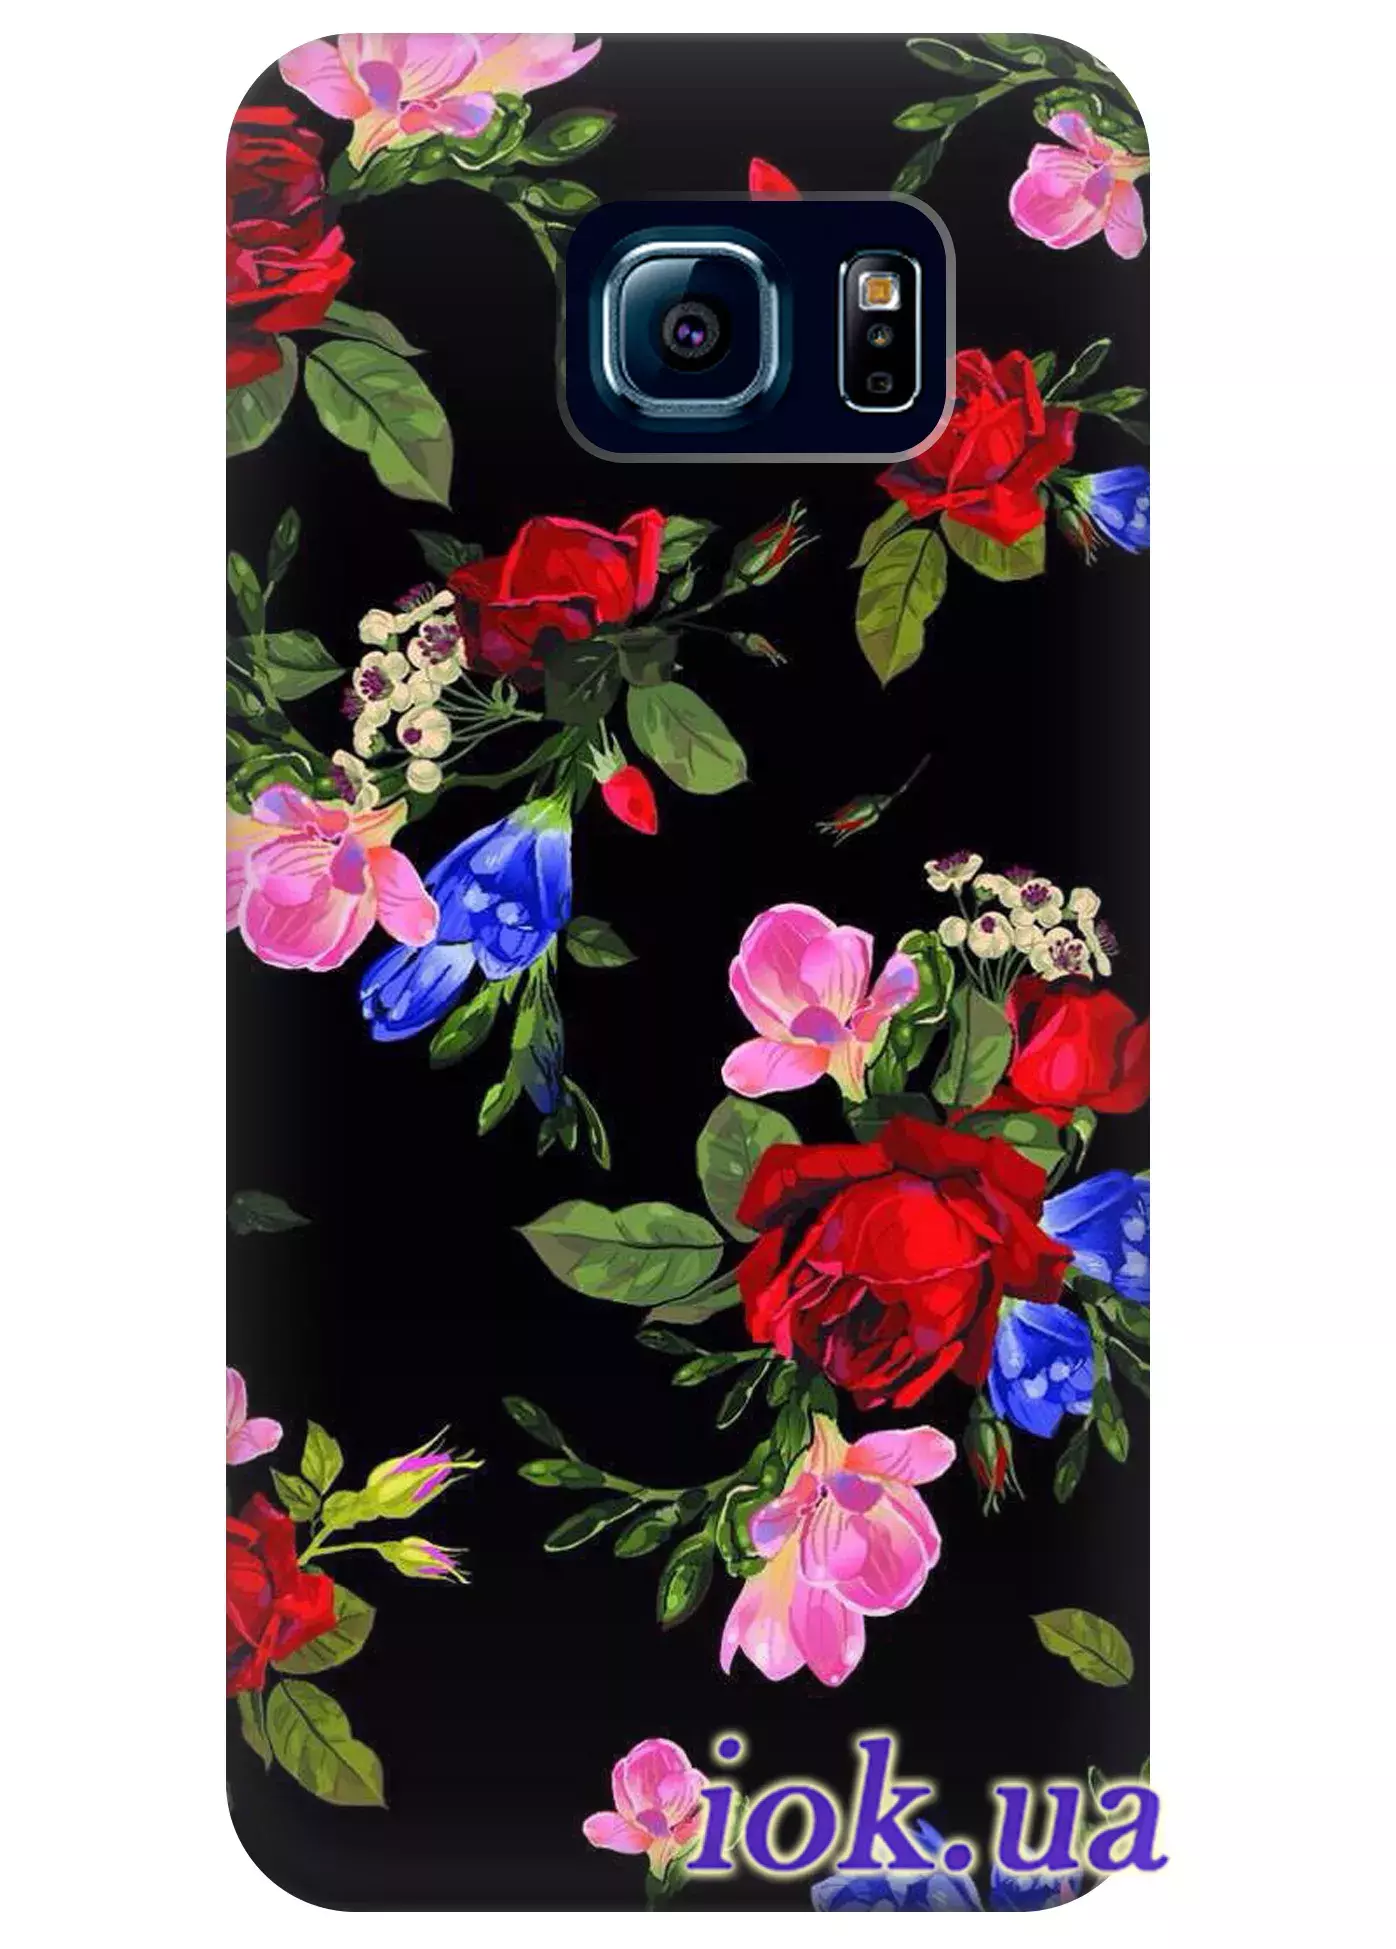 Чехол для Galaxy S6 Edge Plus - Красочные цветы